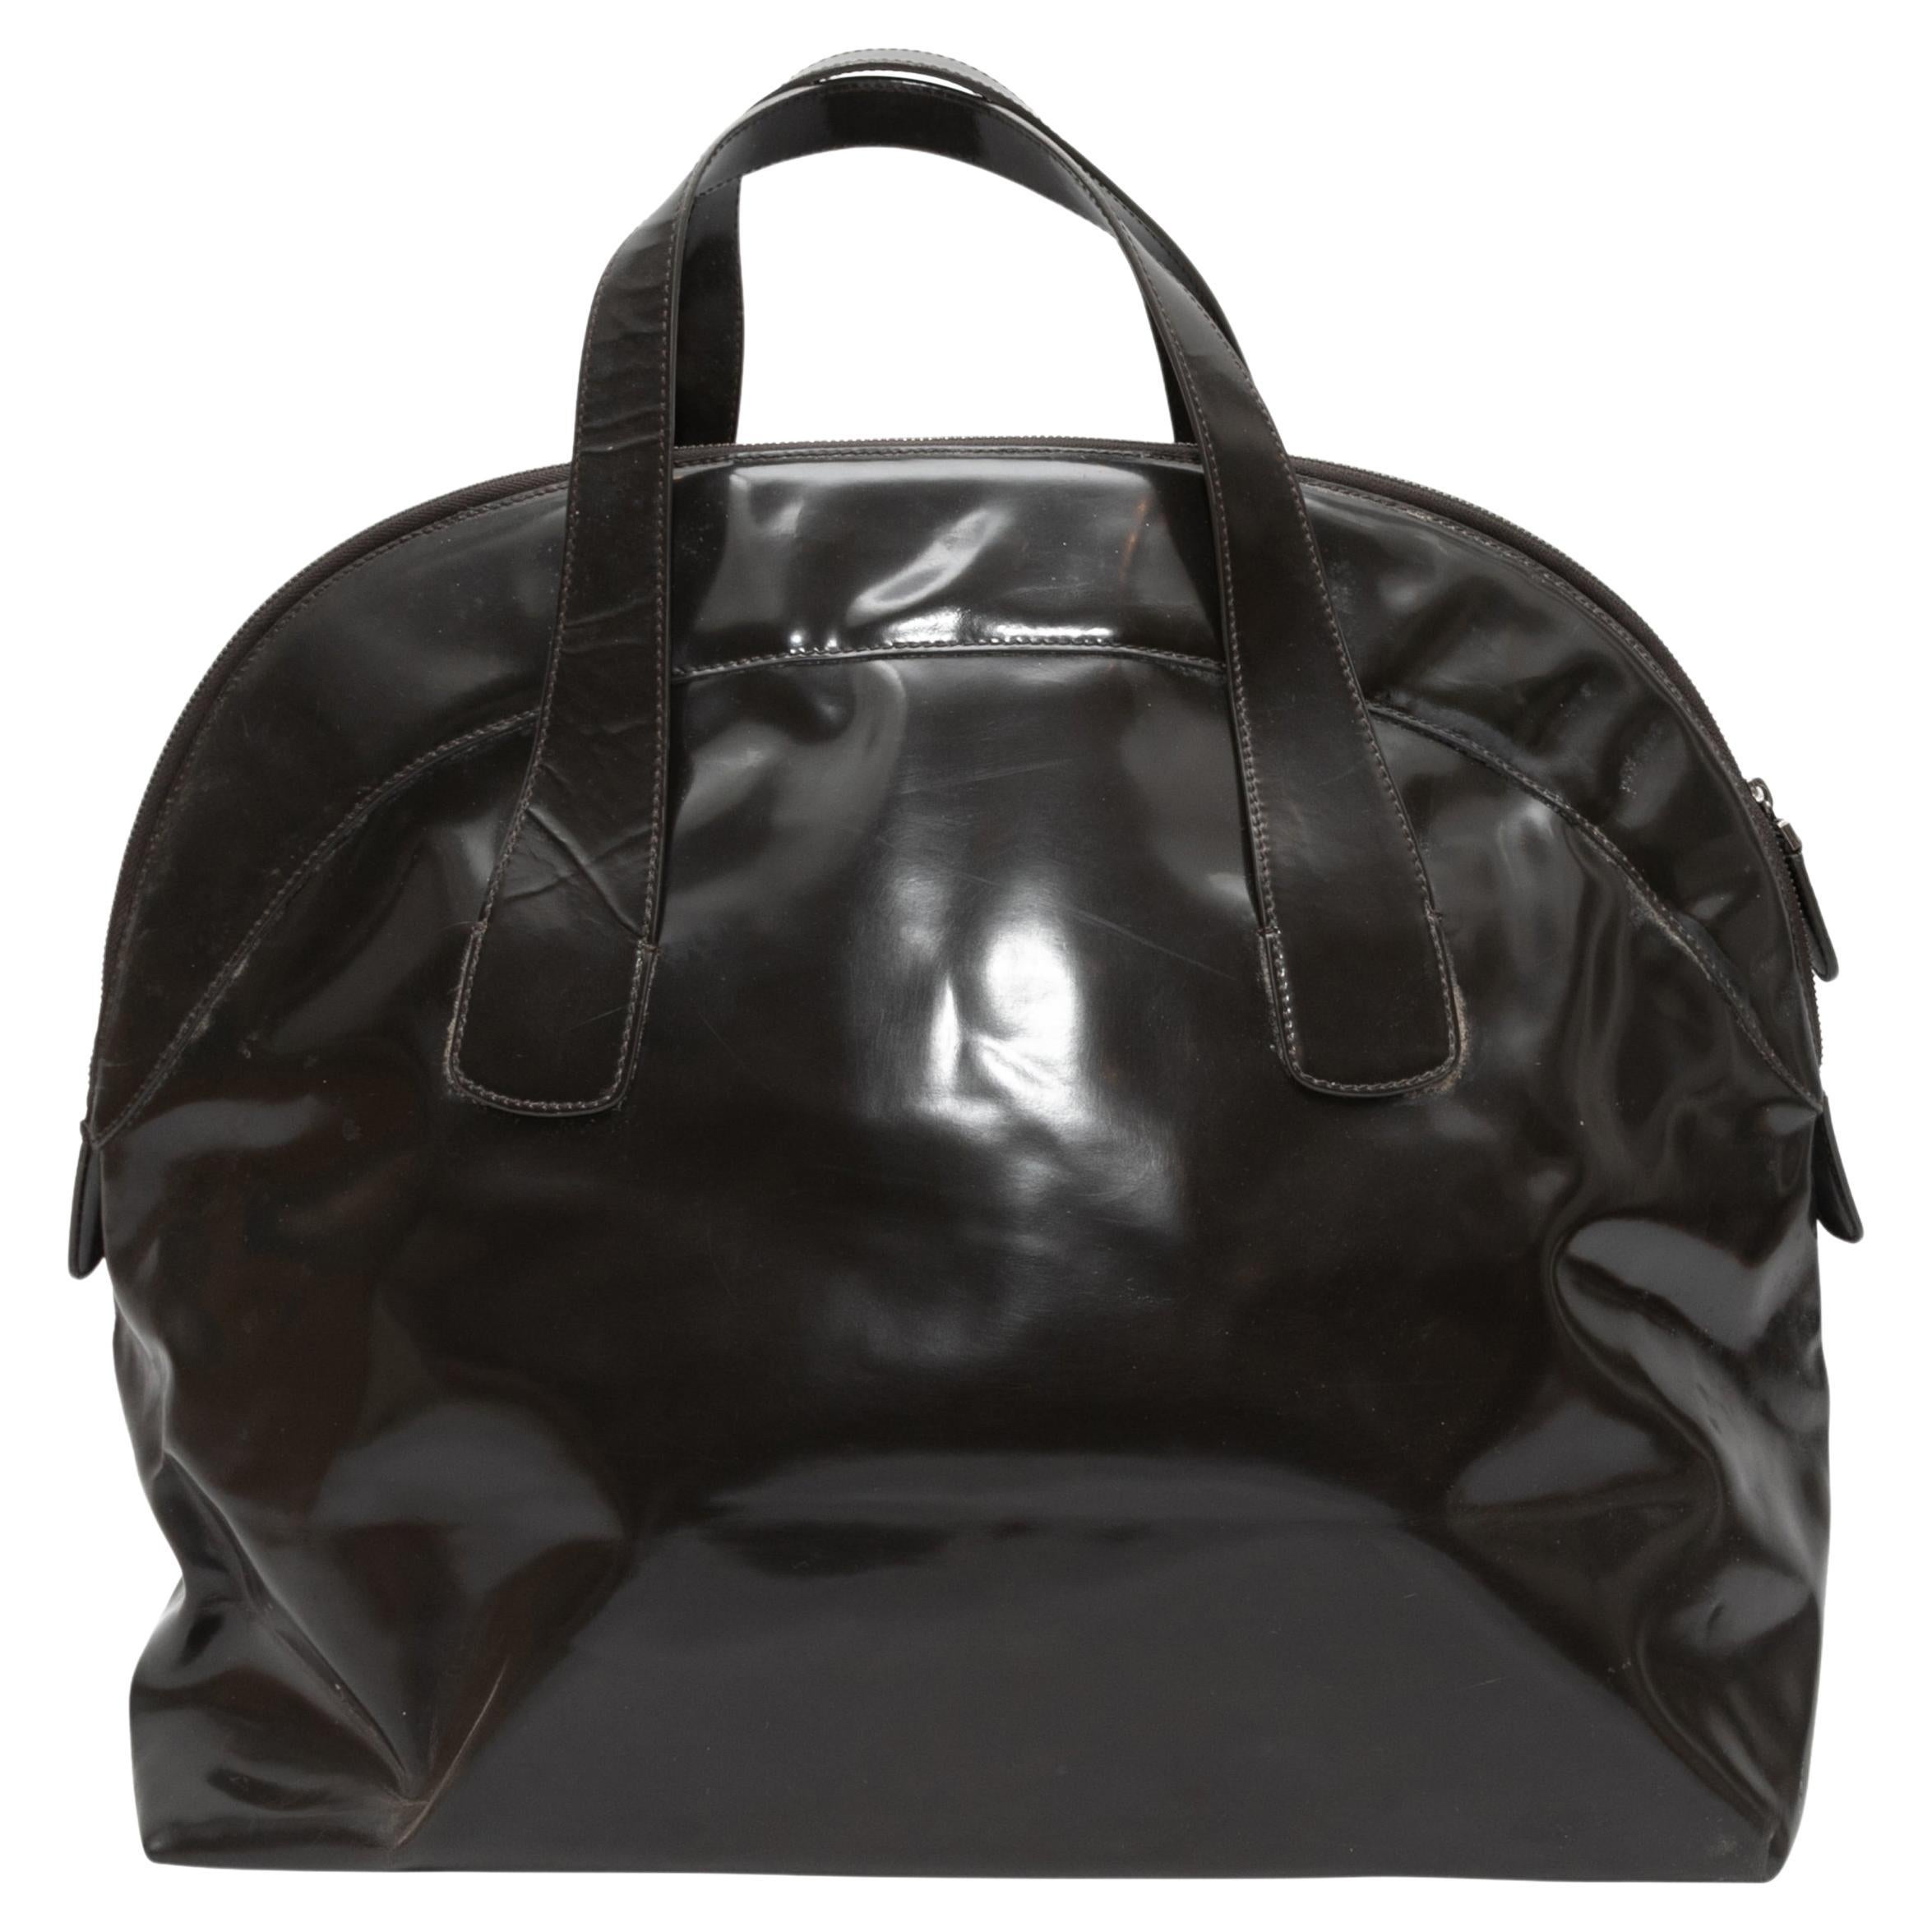 Schwarze Marni Patent Top Handle Bowler Bag. Diese Tasche hat einen Körper aus Lackleder, zwei flache Griffe und einen Reißverschluss oben. 22,5